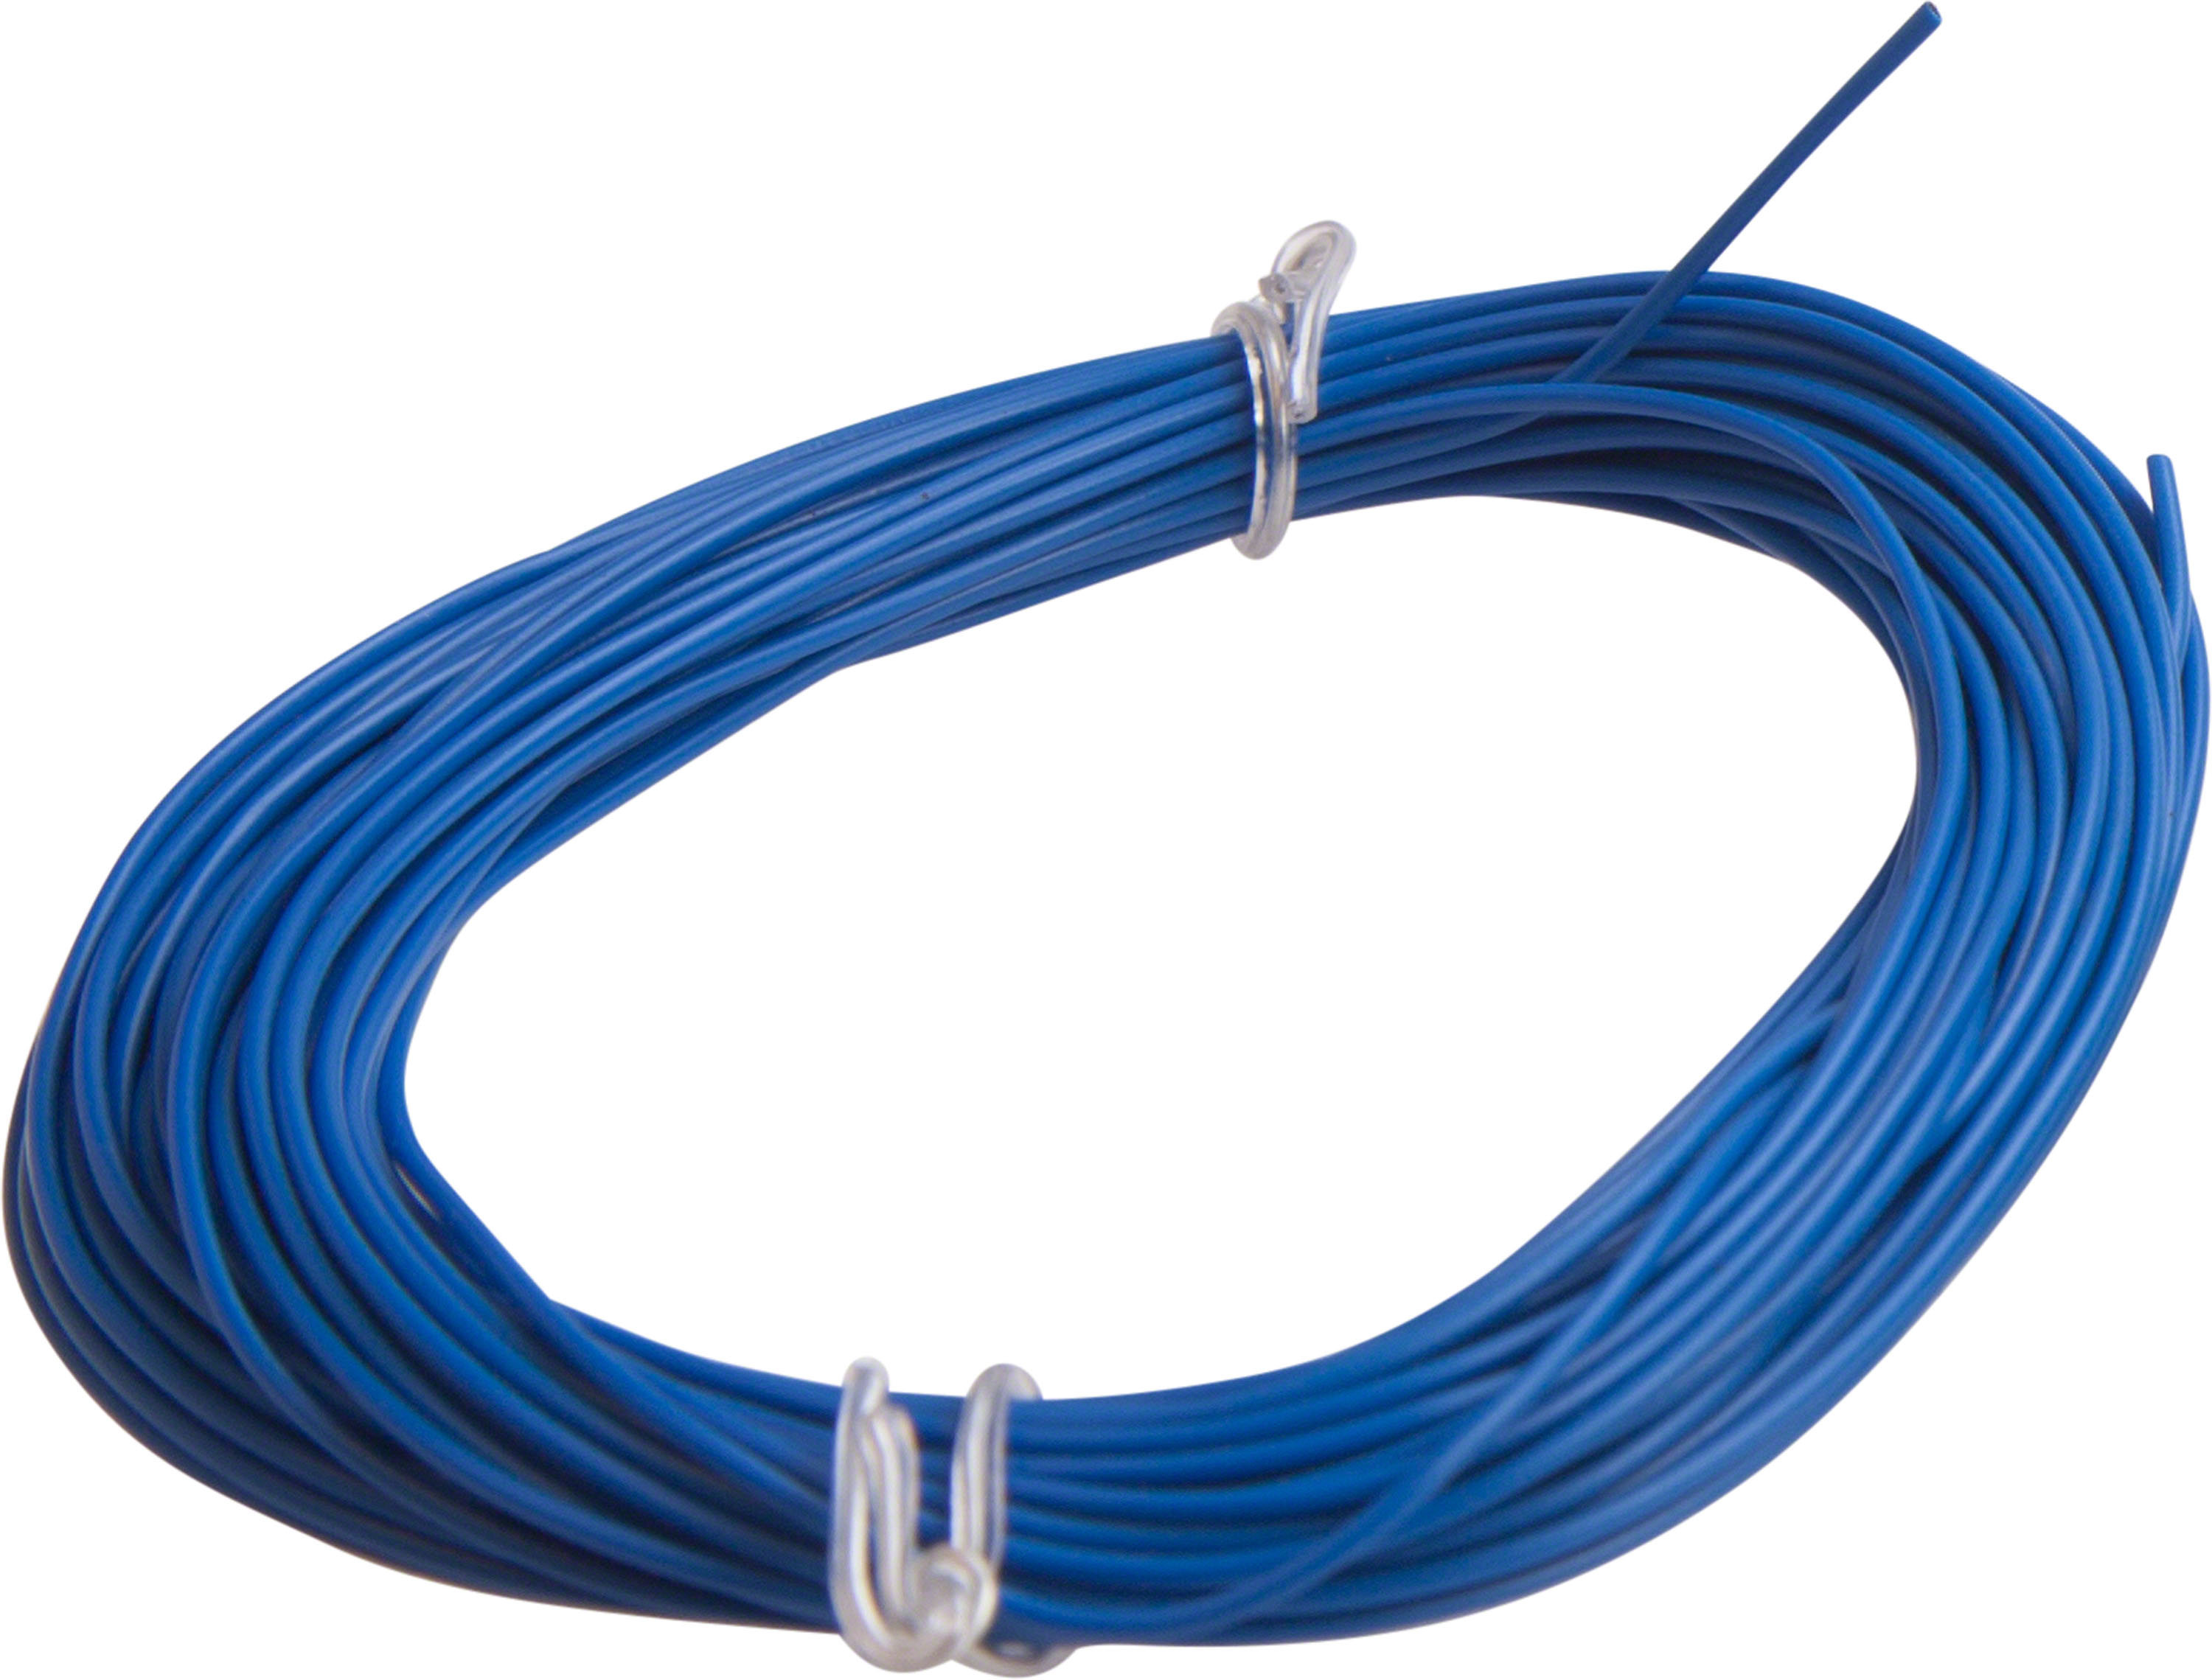 Handelsware Litzen Kabel 0.14 mm² Blau 10 Meter LITZE BL - 3DWare  Shop Schweiz